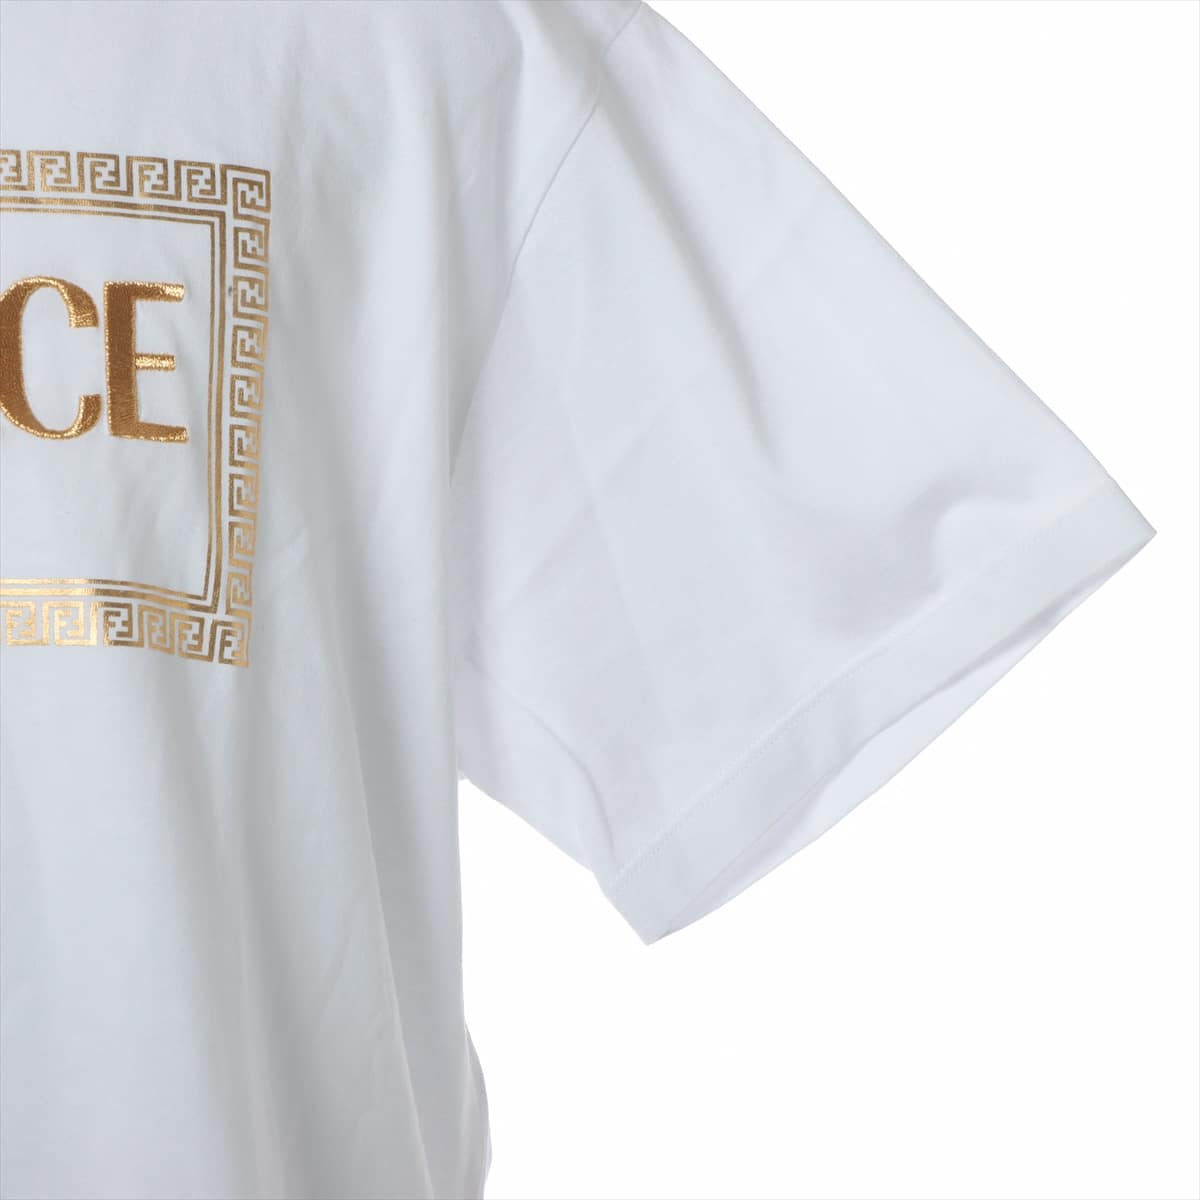 フェンディ×ヴェルサーチェ メデューサ 22SS コットン Tシャツ M メンズ ホワイト  FENDACEロゴ刺繍